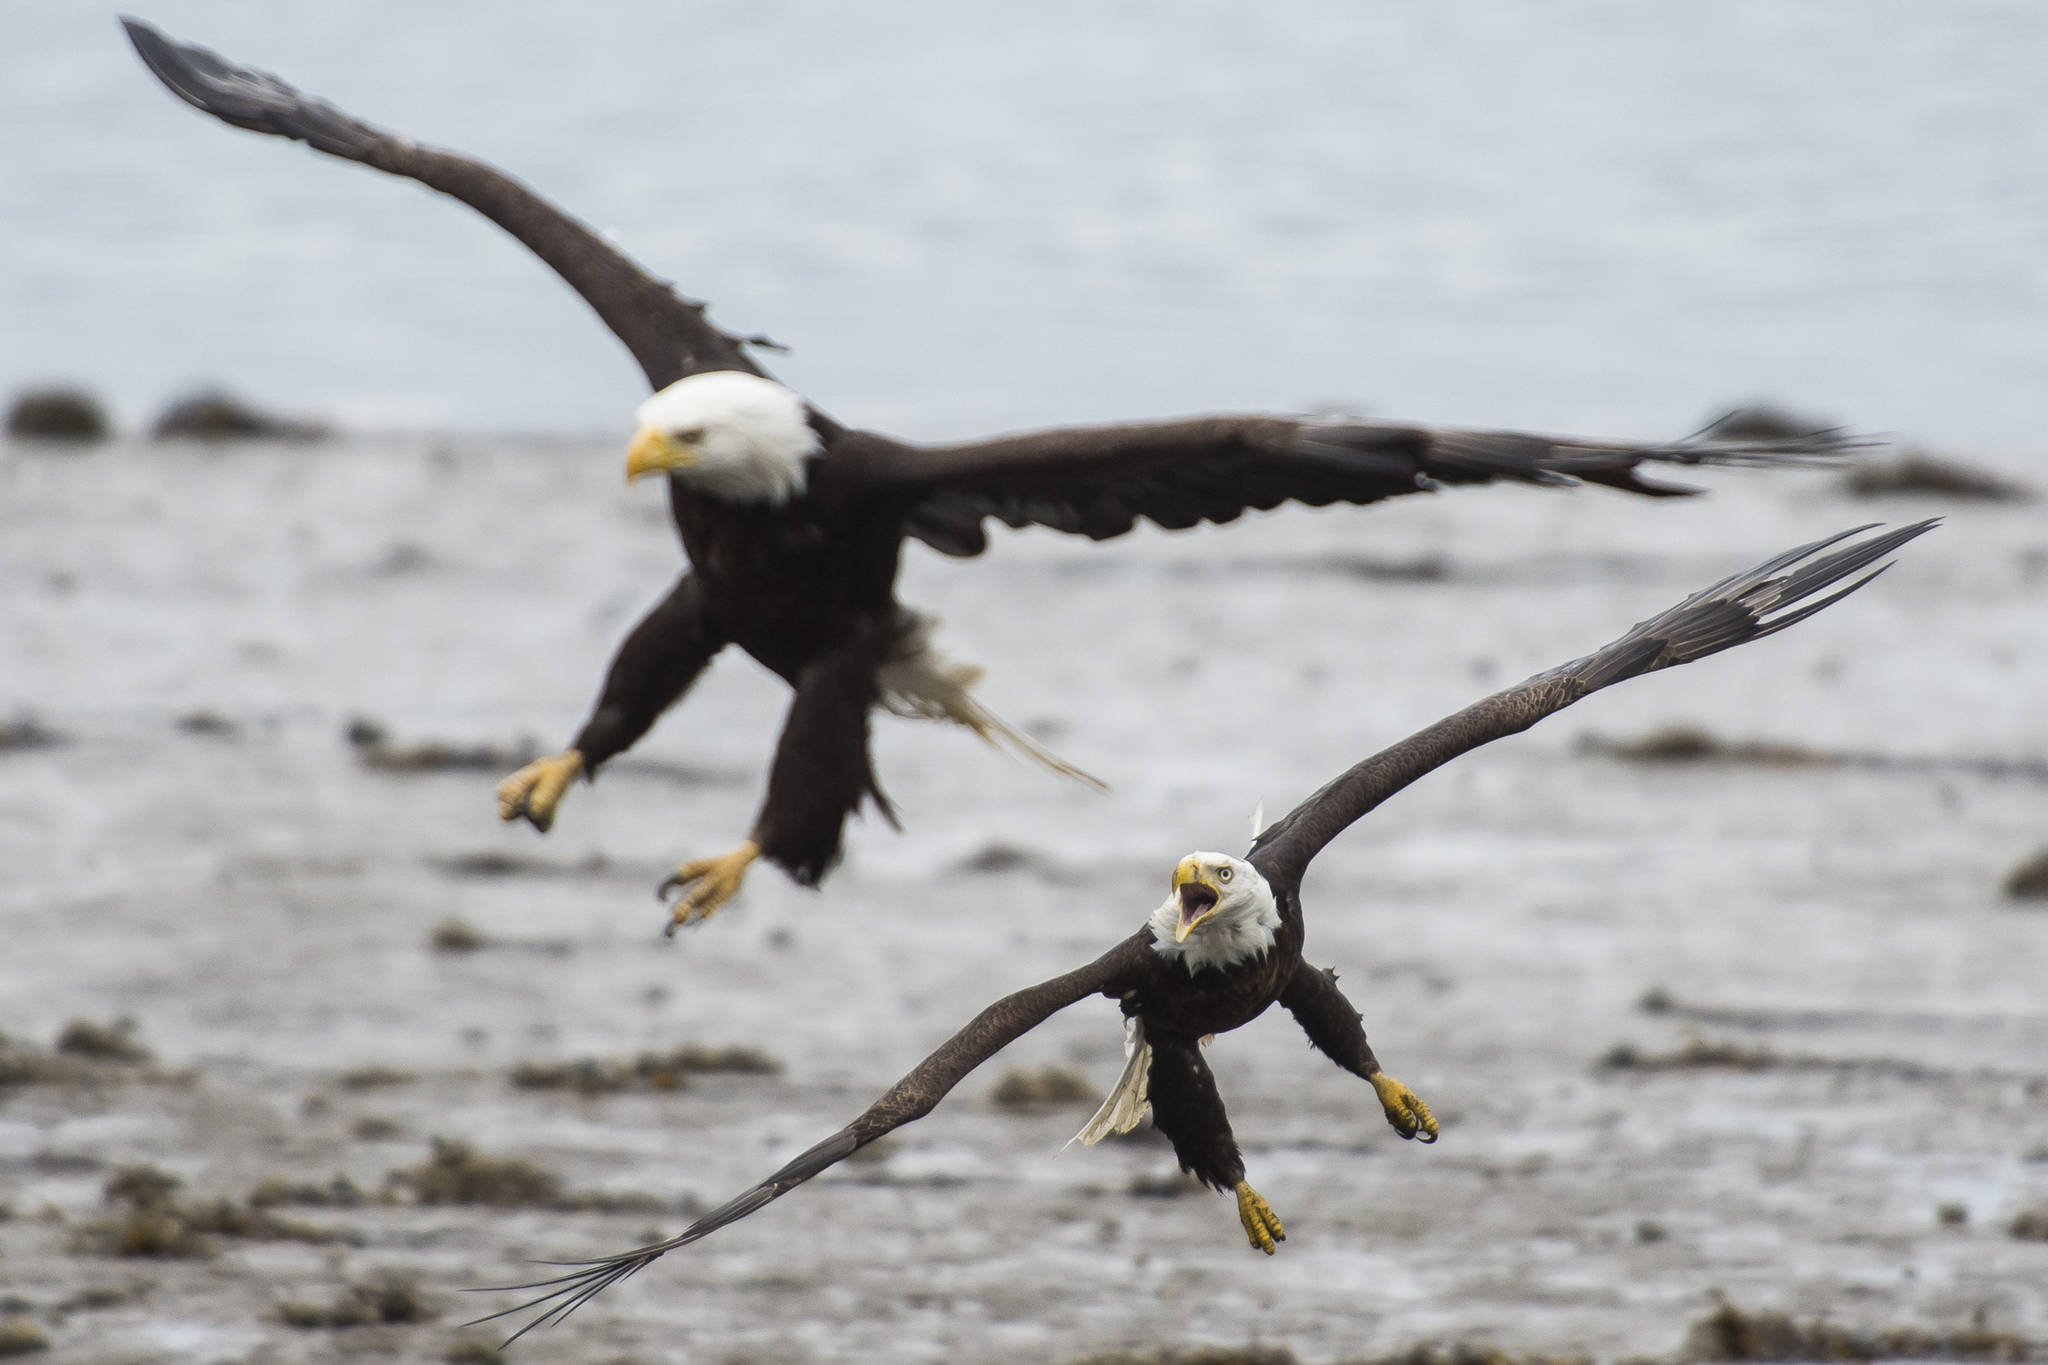 Alaska Raptor Center recovers five dead eagles, one alive in Sitka